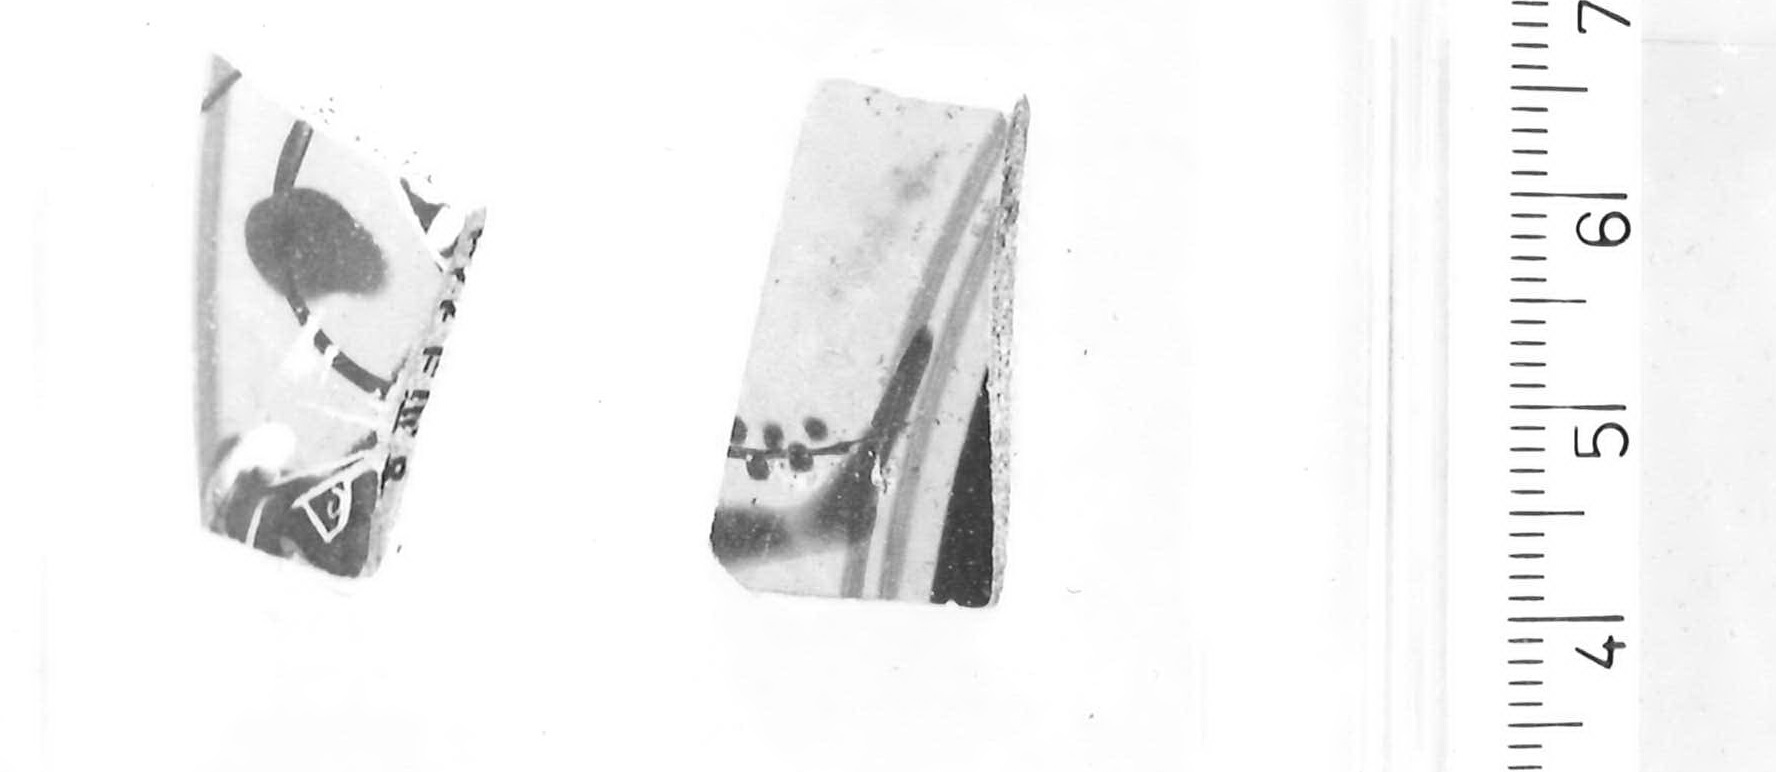 kylix/ frammenti di Pittore di Caylus (maniera) - Piceno IVB (primo quarto sec. V a.C)